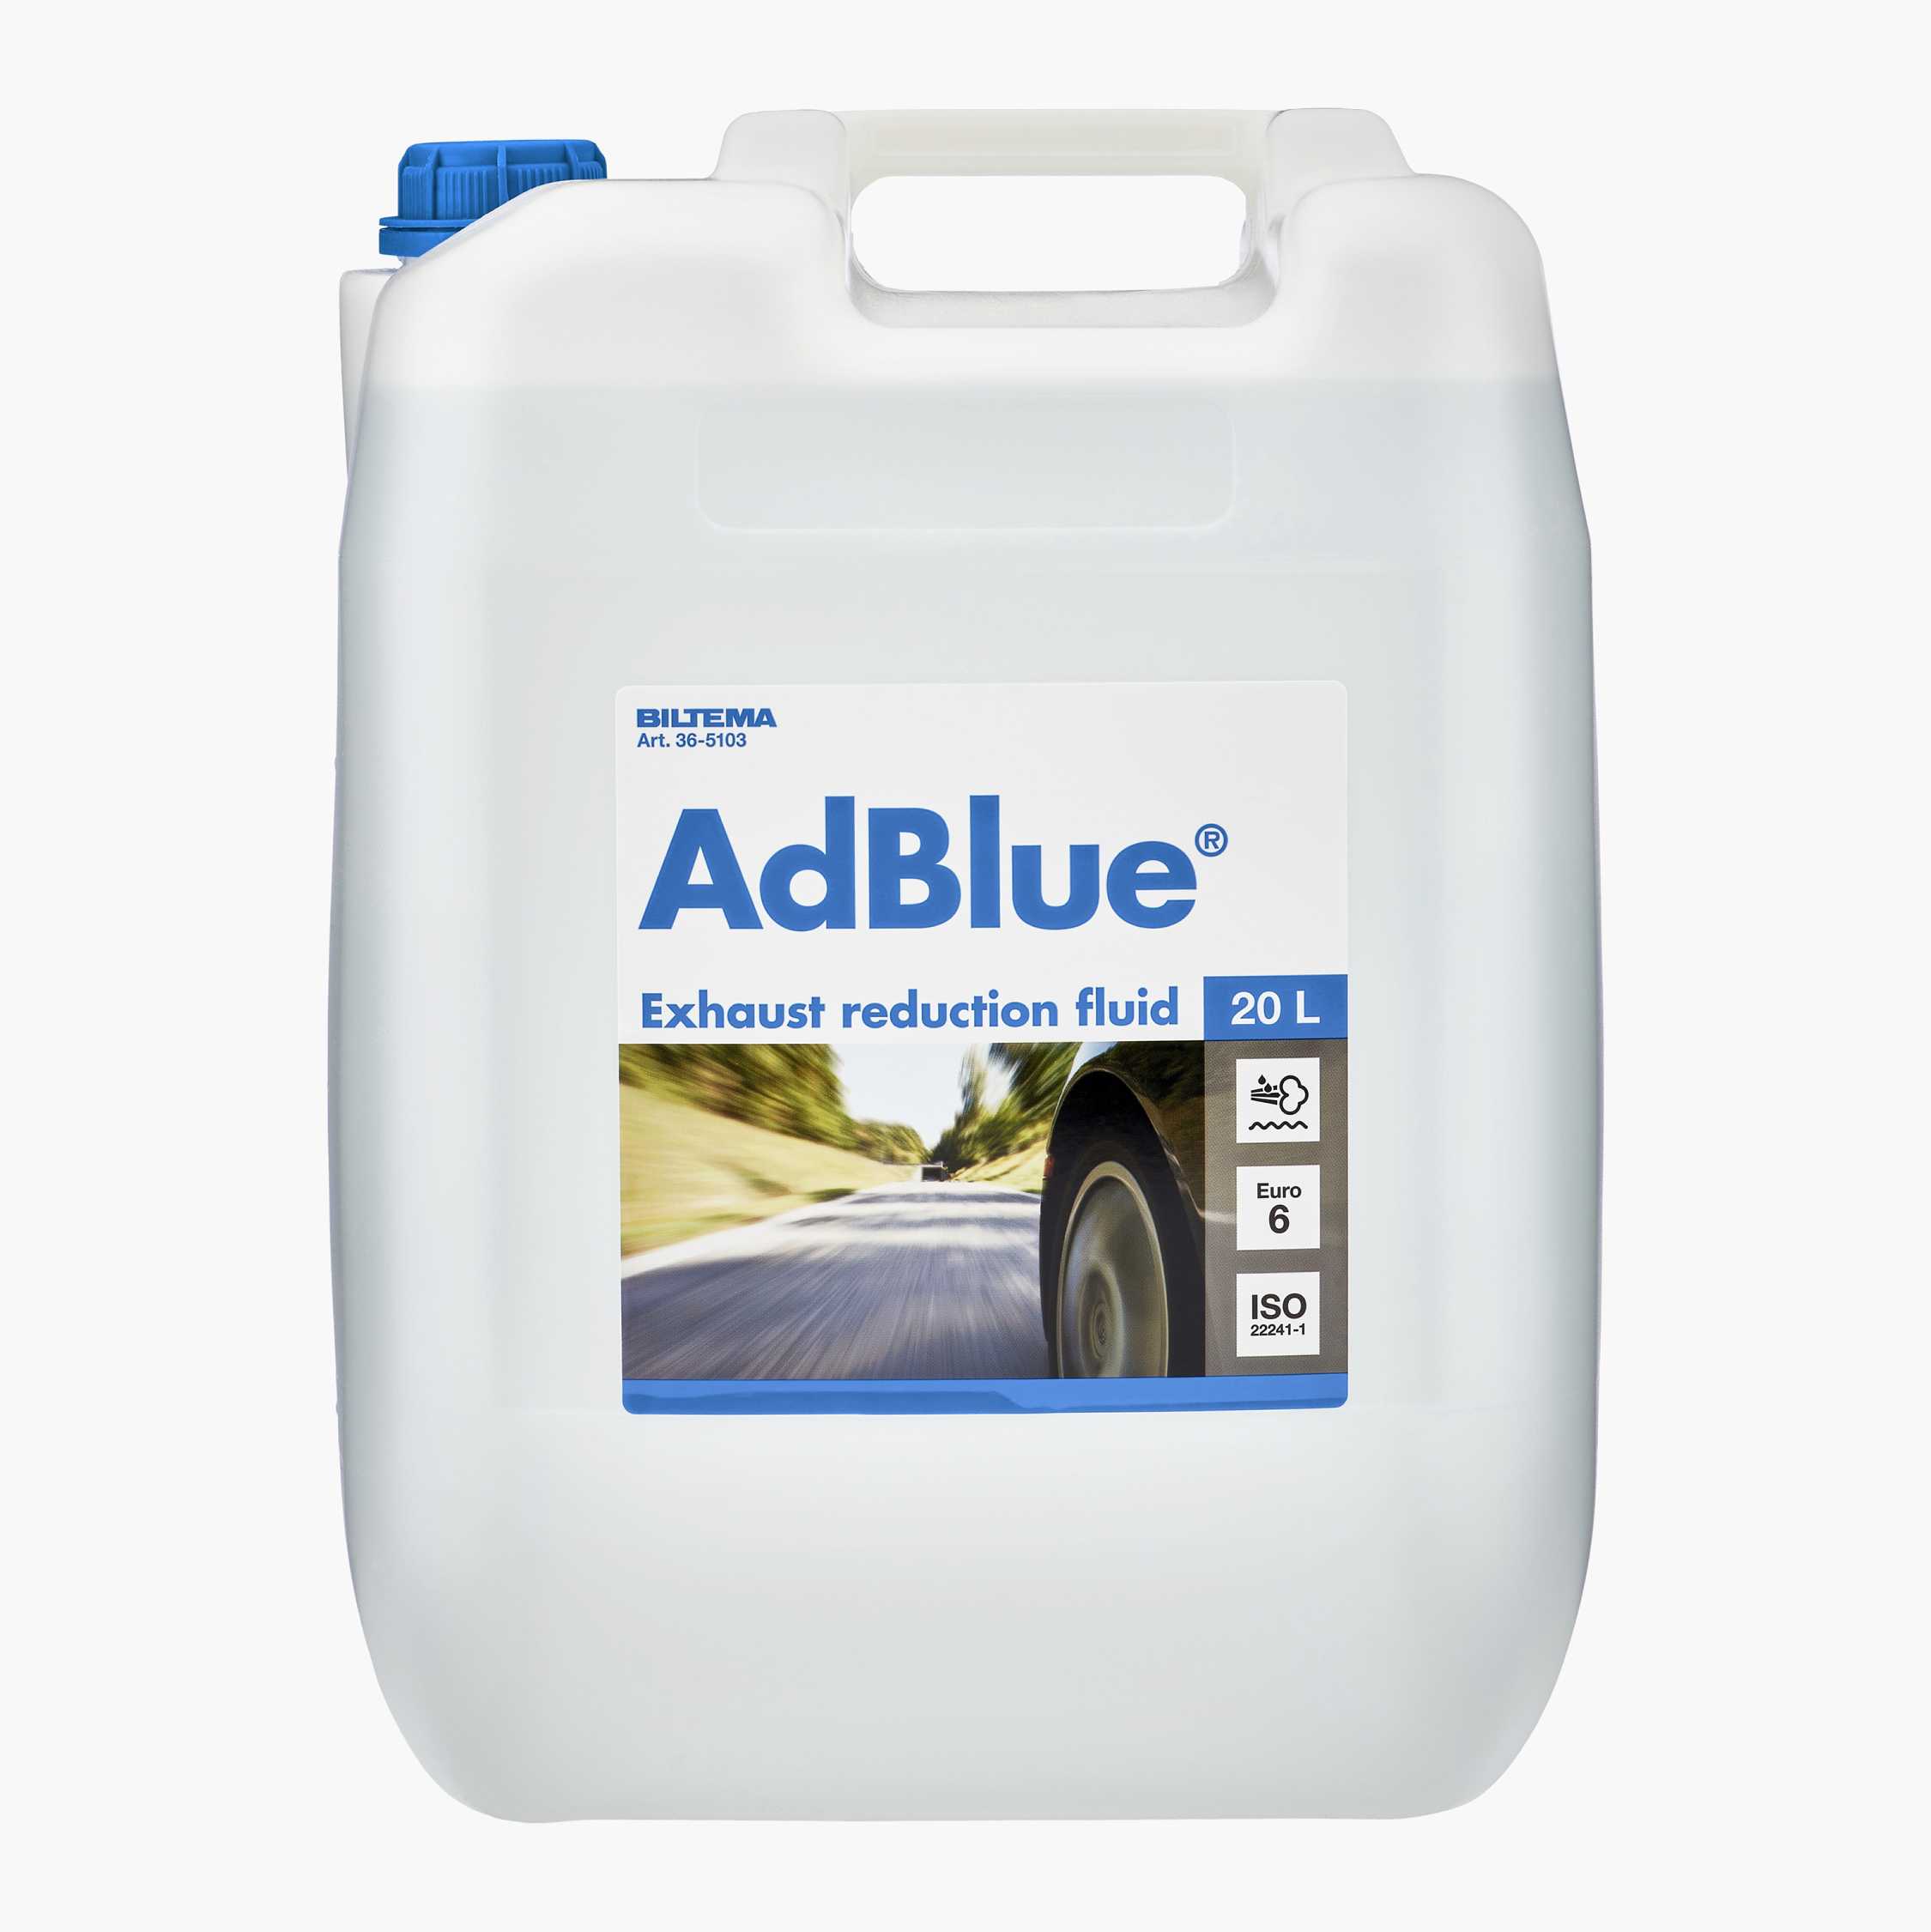 AdBlue 10L/20L